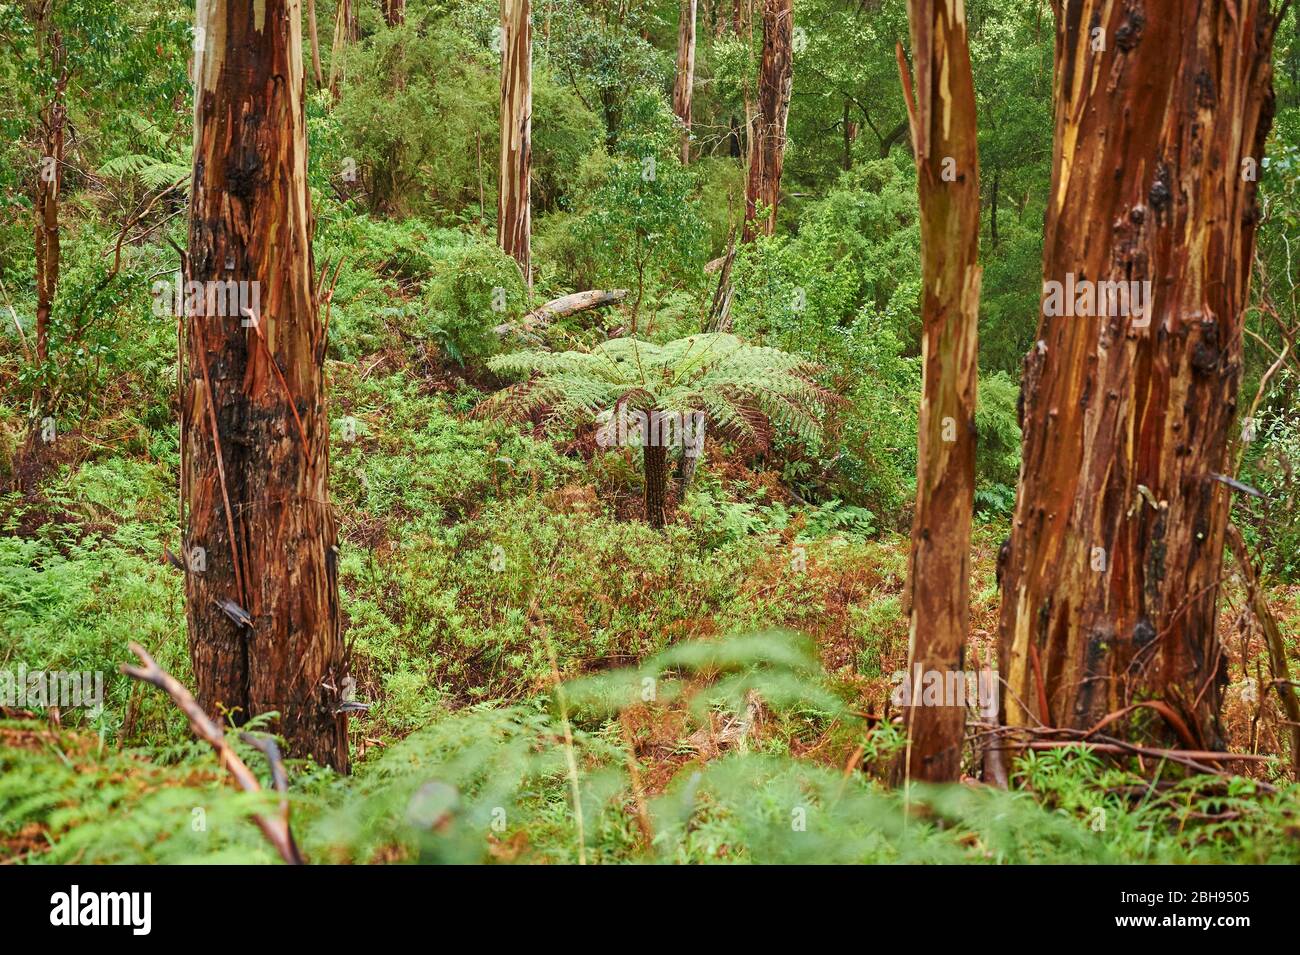 Australischer Baumfarn (Dicksonia antarktis), Landschaft, Wald, Great Otway National Park, Victoria, Australien, Ozeanien Stockfoto